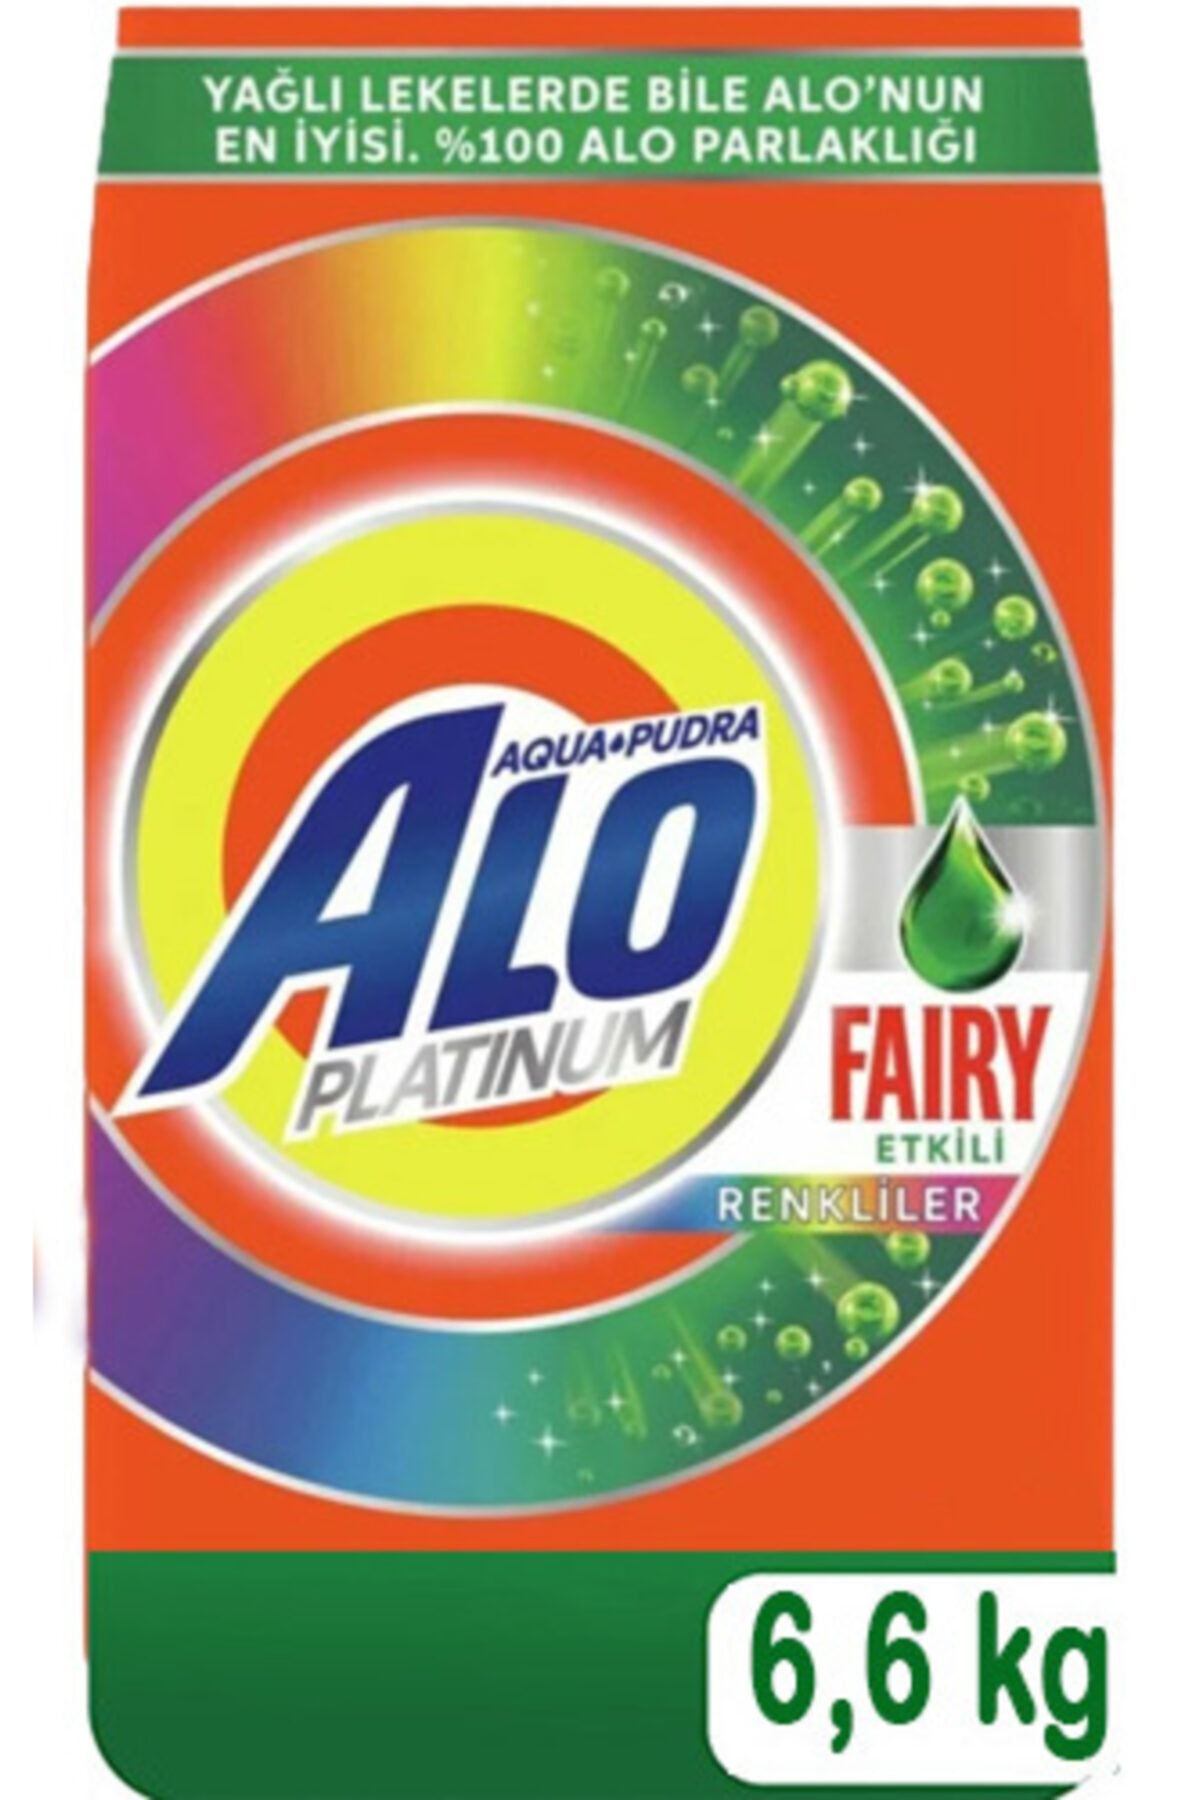 Alo Platinum Toz Çamaşır Deterjanı Fairy Etkili Renkliler Için 6,6 kg